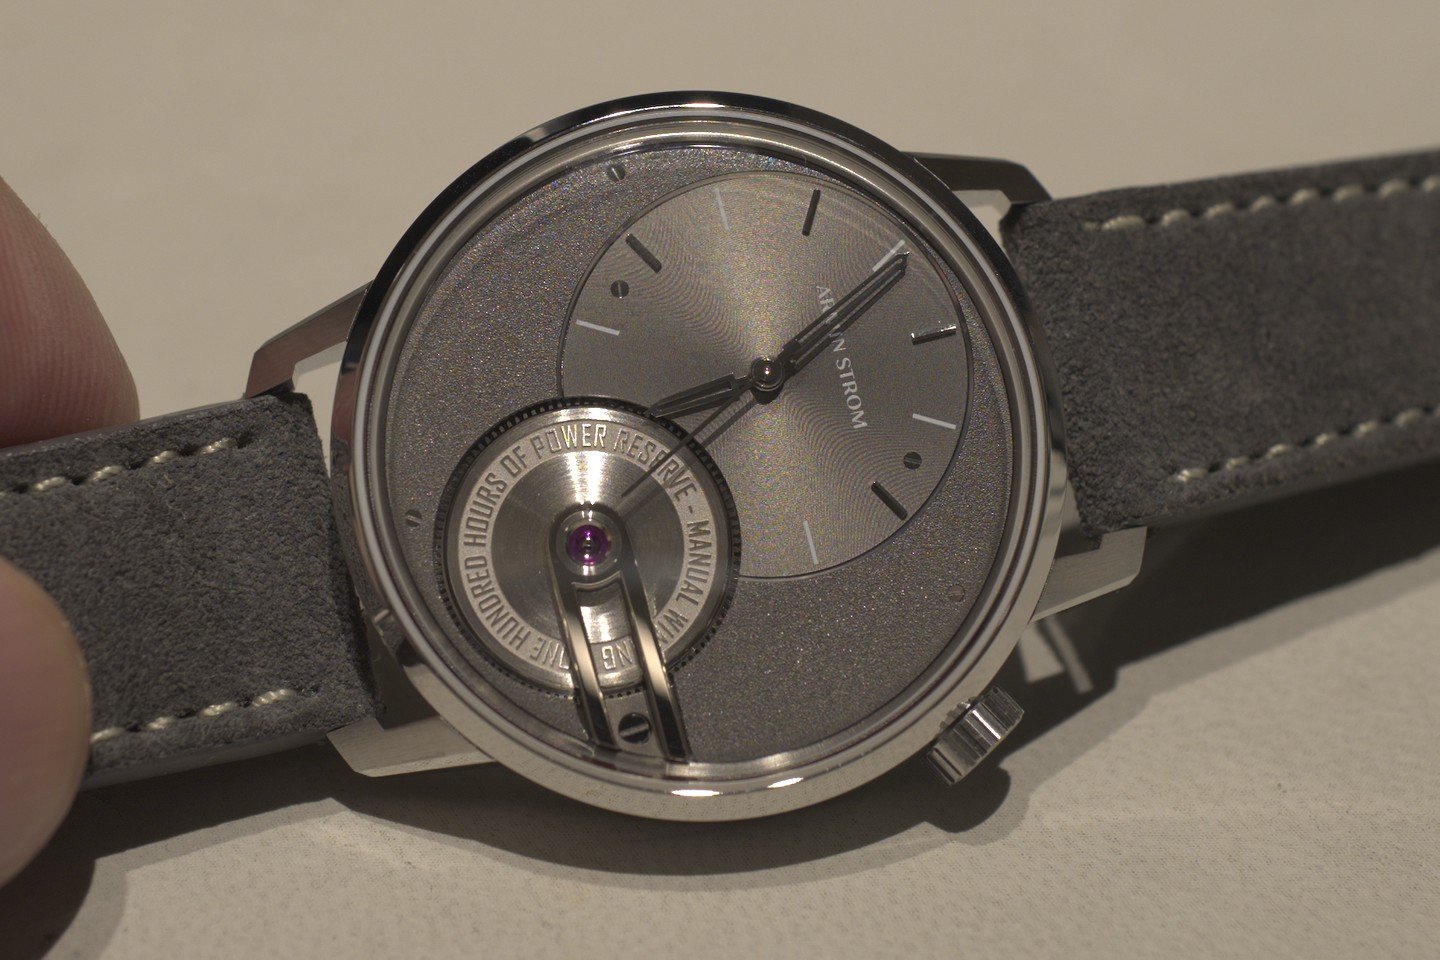 Armin Strom（アーミン・シュトローム）、新作Tribute 1（トリビュート1）を発表 高級時計におけるドレスウォッチをモダンに解釈＋実機写真